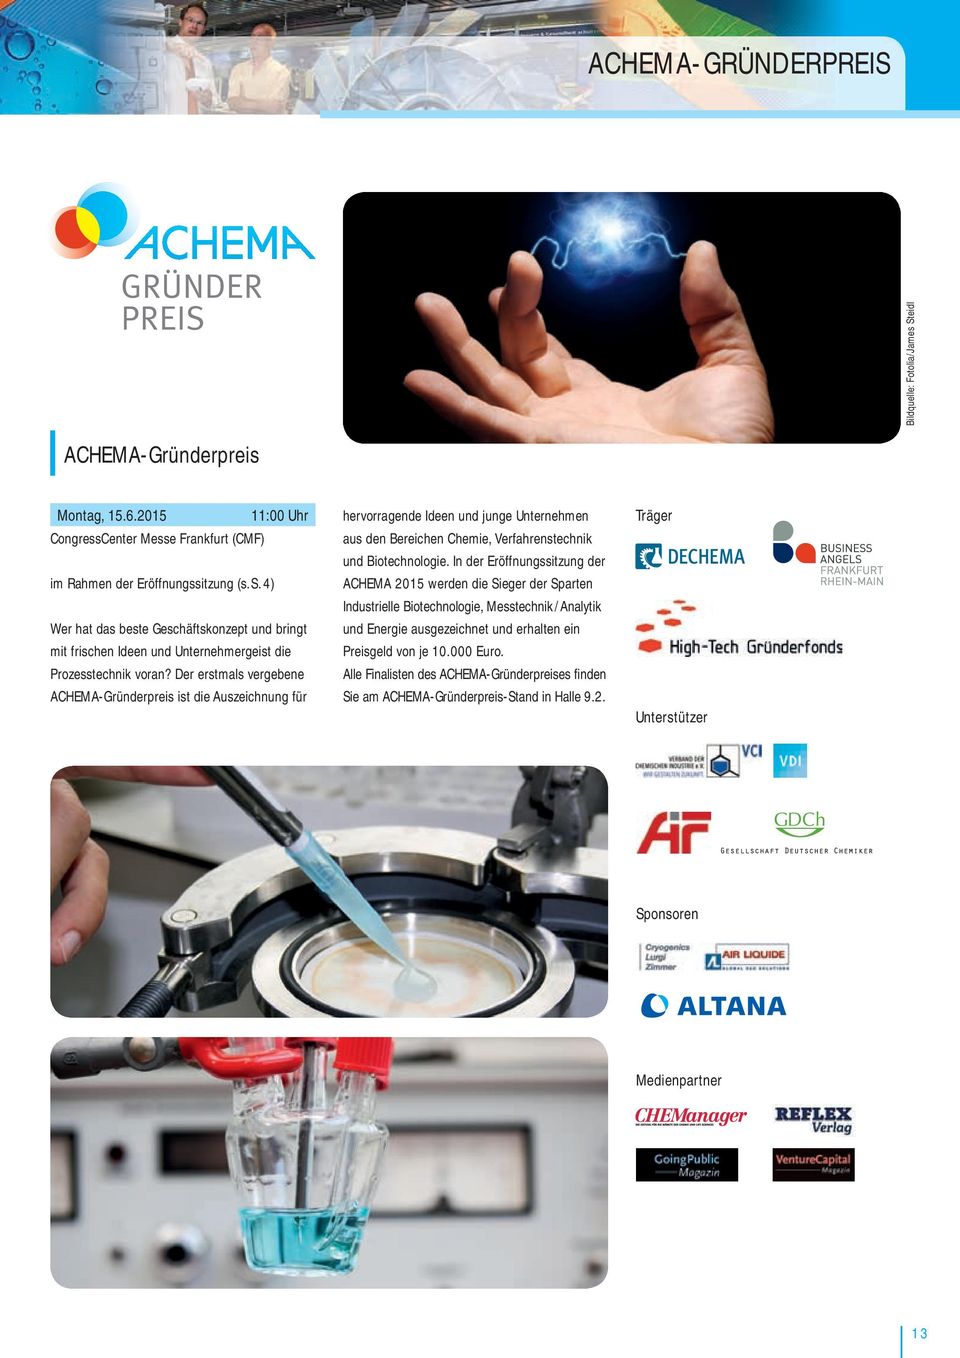 In der Eröffnungssitzung der ACHEMA 2015 werden die Sieger der Sparten Industrielle Biotechnologie, Messtechnik / Analytik und Energie ausgezeichnet und erhalten ein Preisgeld von je 10.000 Euro.